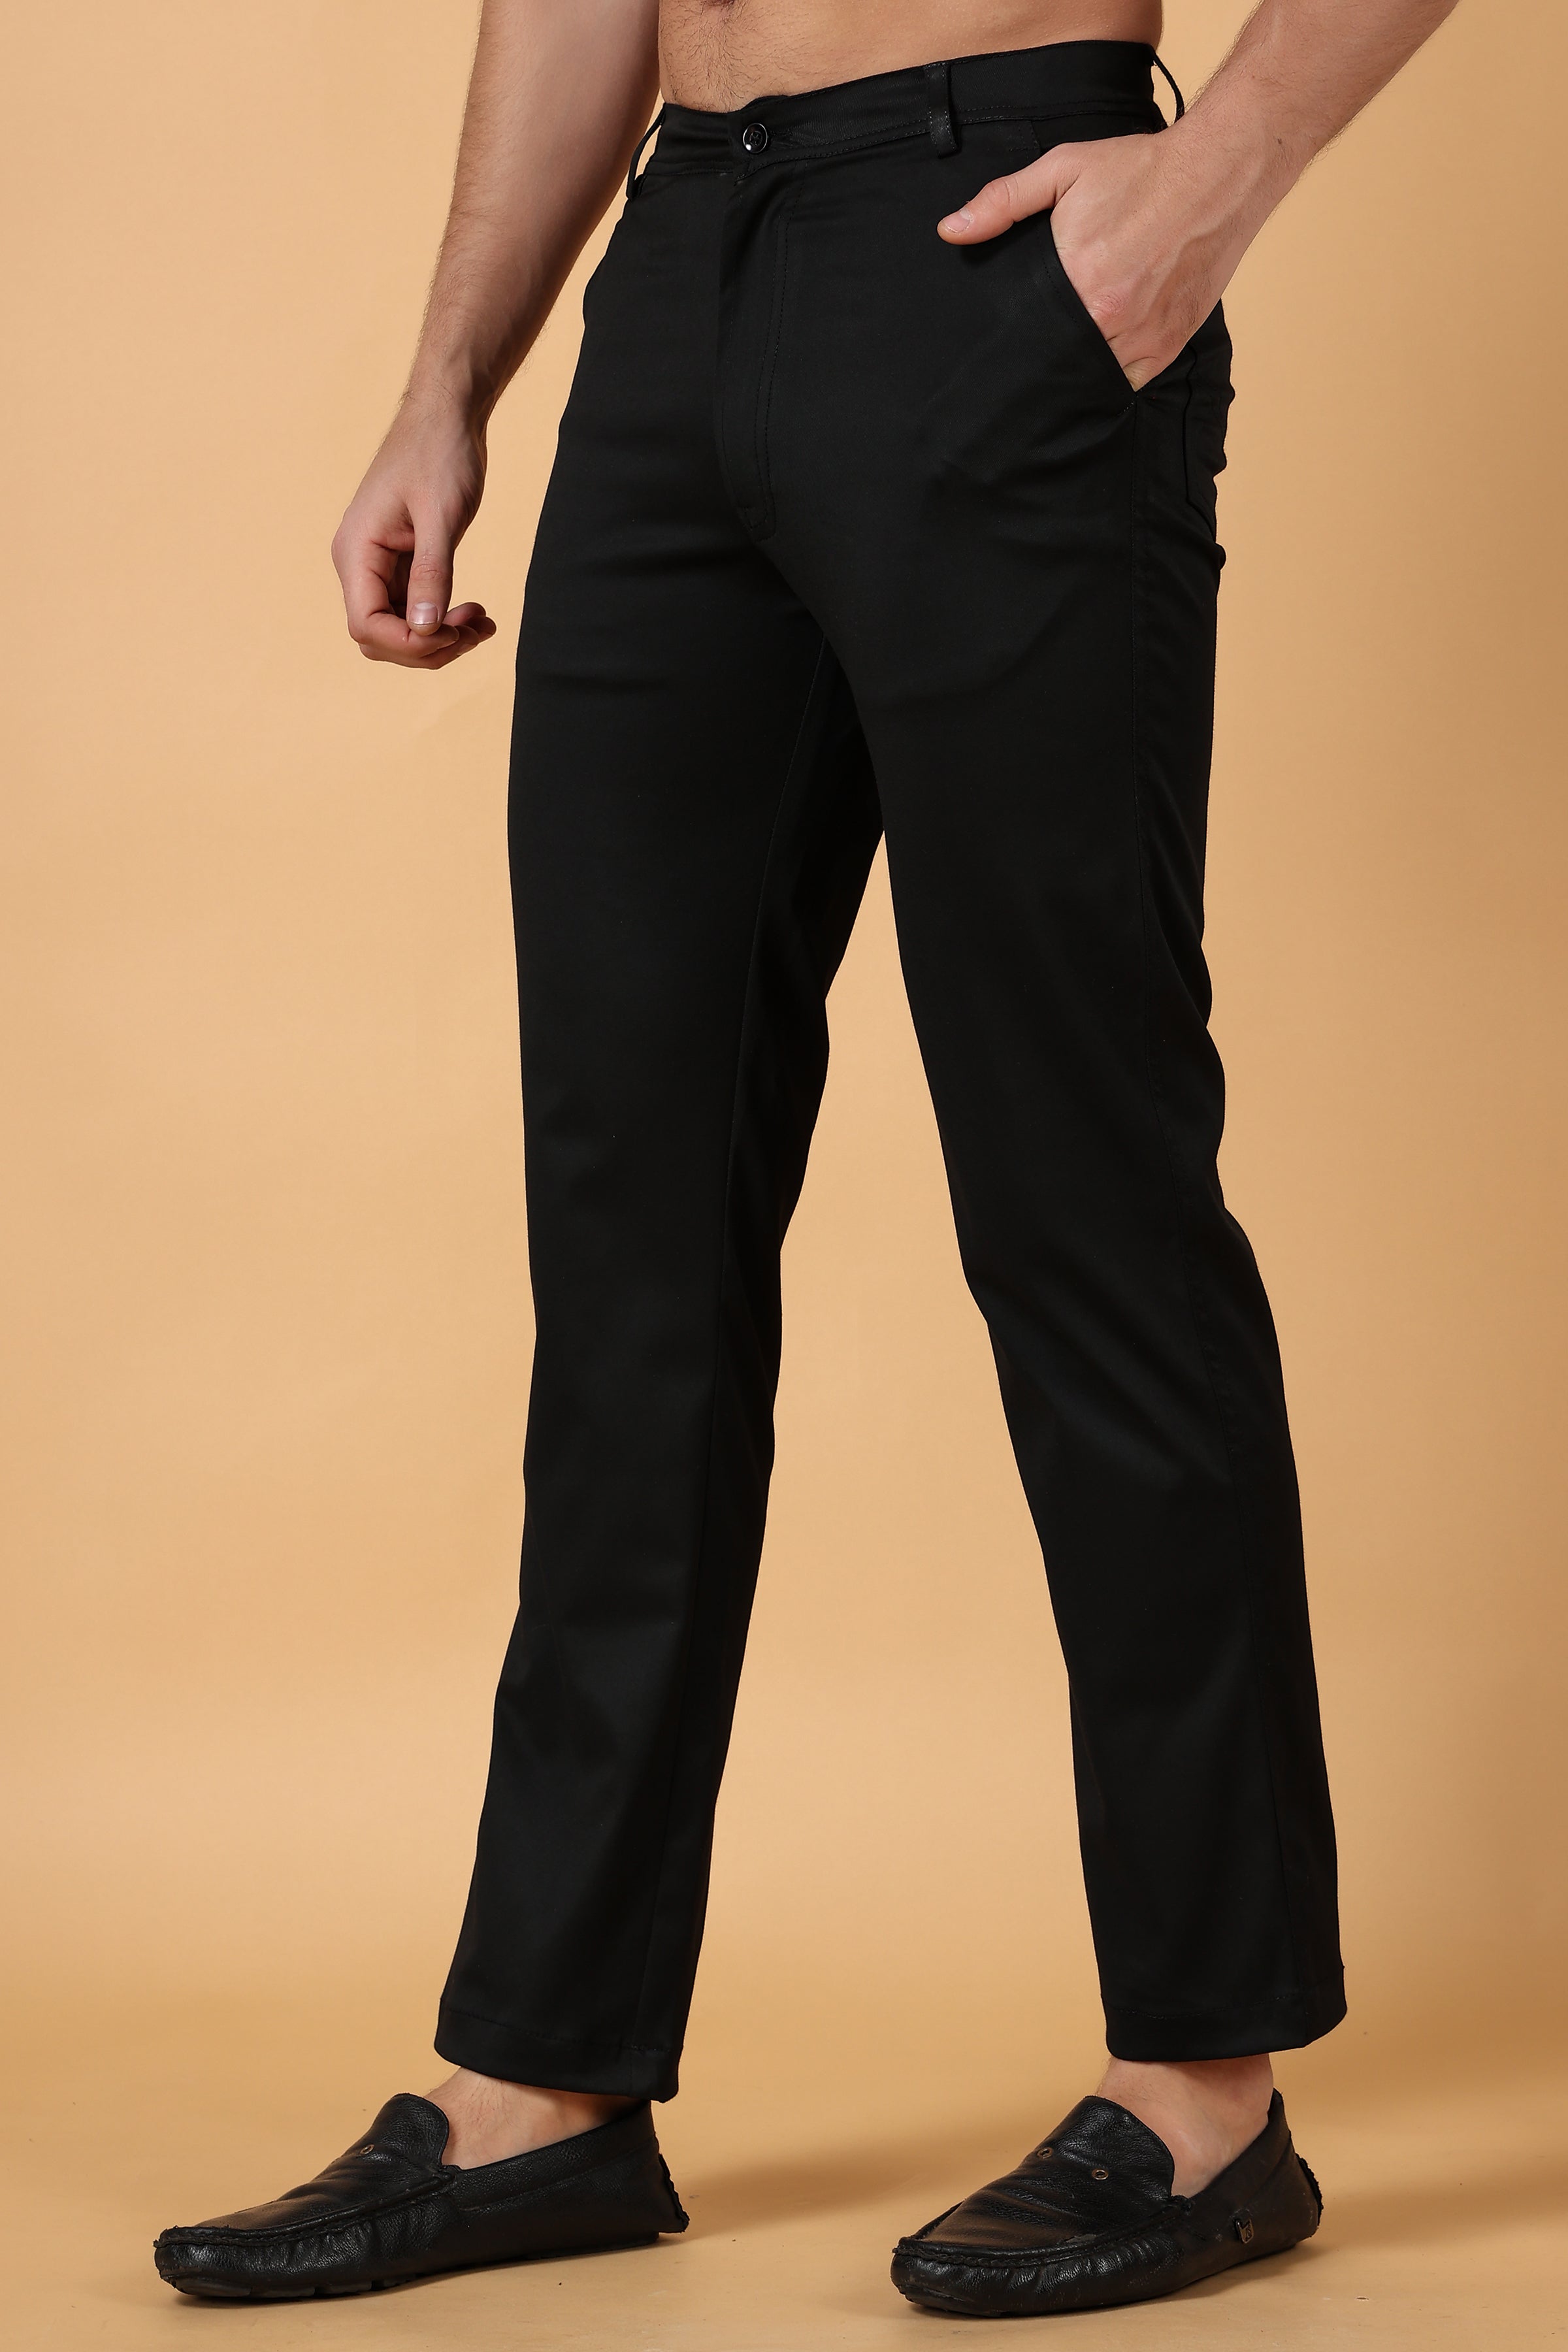 Chinos Pants Men Slim Fit Men's Trousers Suit Pants Ankle-Length Zipper  Pants Casual Pocket Pleated Solid Men's pants Grey XXXXL - Walmart.com